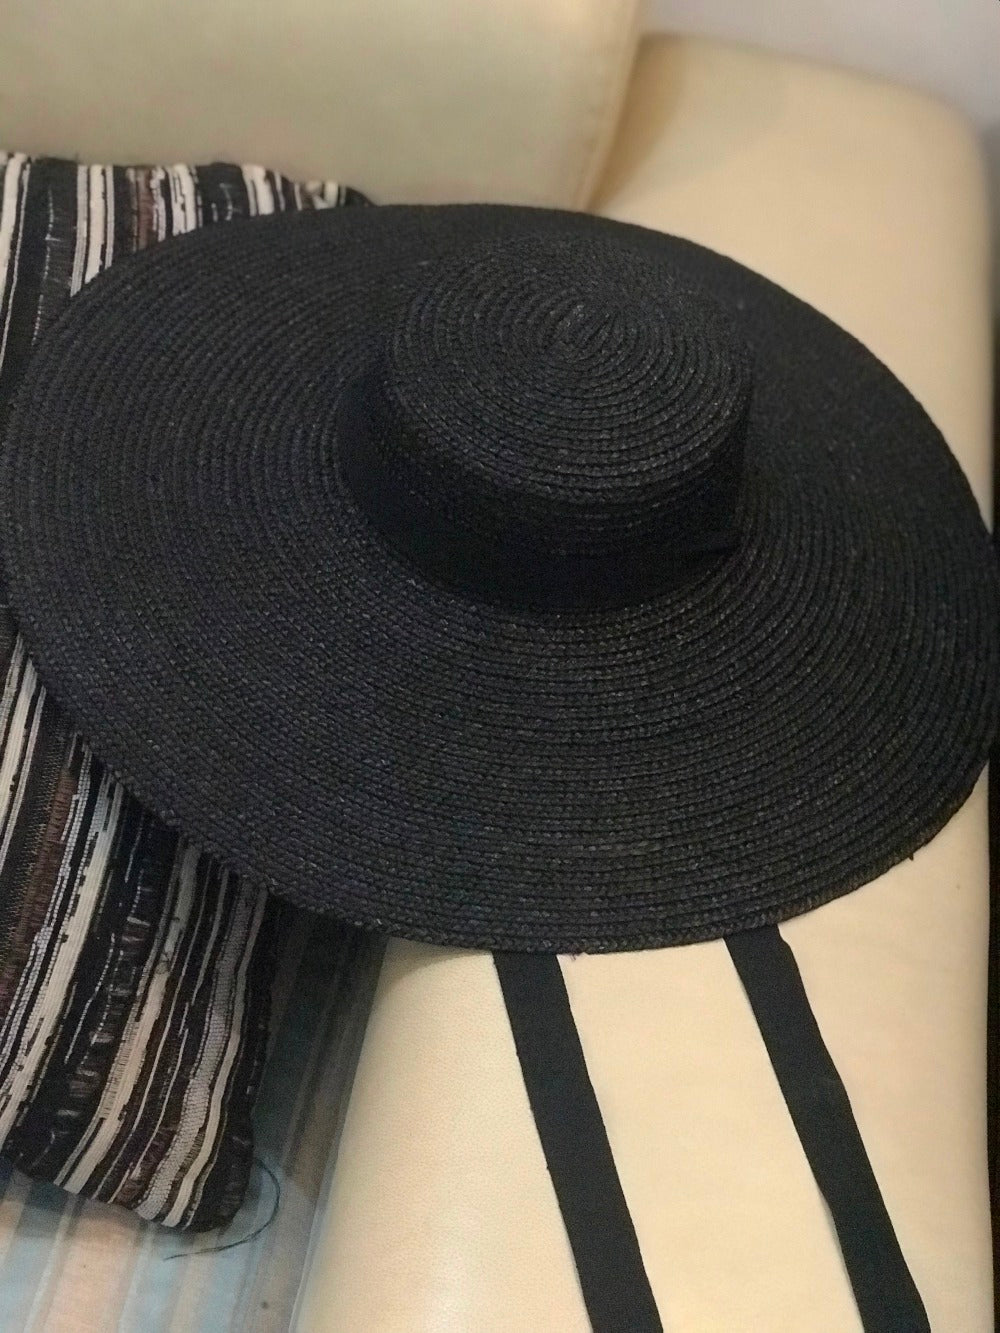 YZ Splendid Designer Giant Hat